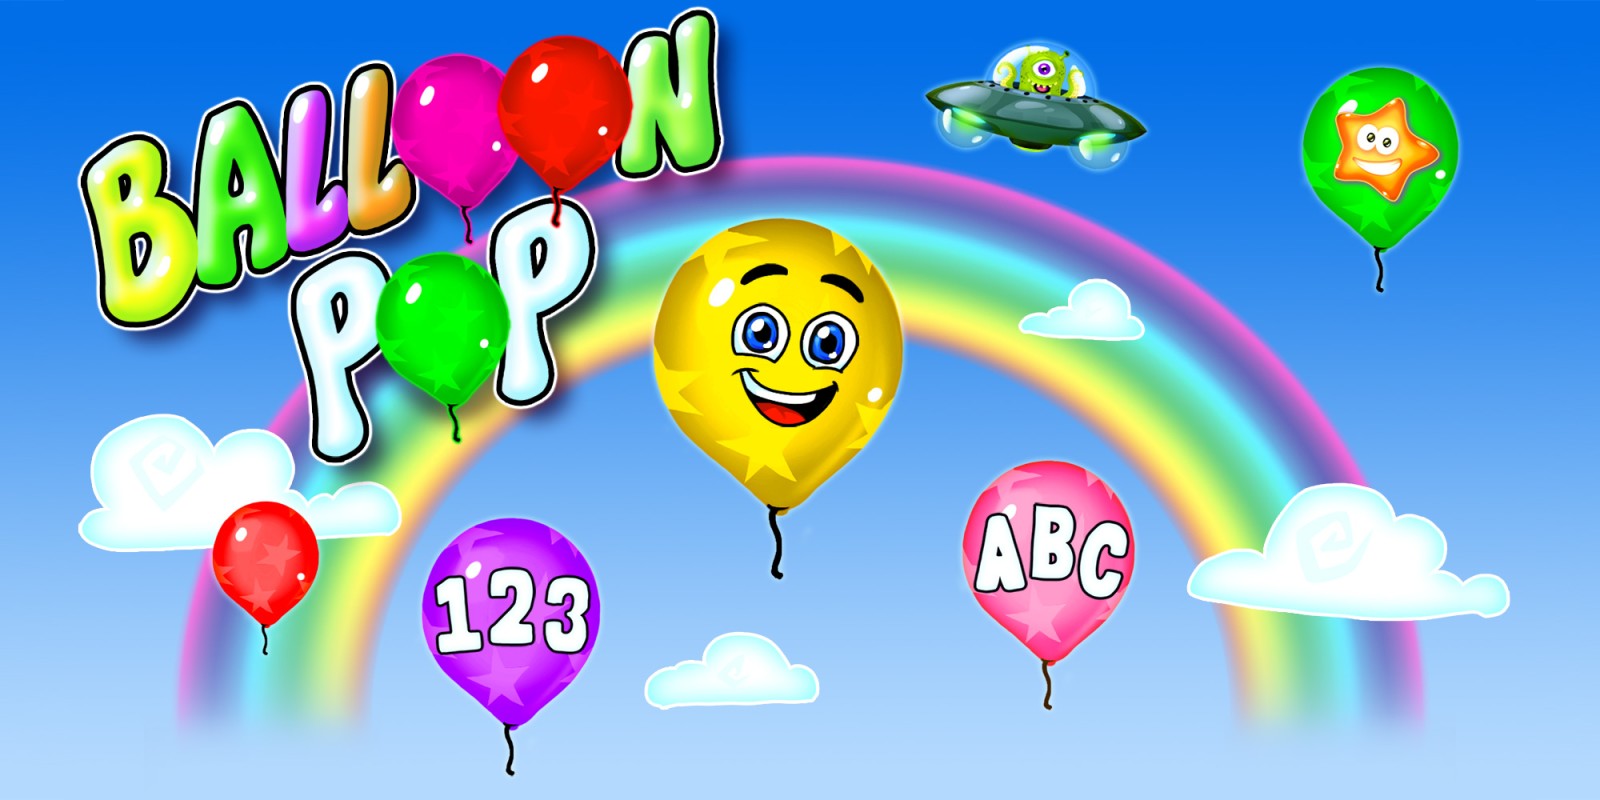 Balloon Pop - Ballons & Luftballons Platzen Spiel für Kinder & Kleinkinder - Lerne Zahlen, Buchstaben, Formen, Farben in 14 Sprachen